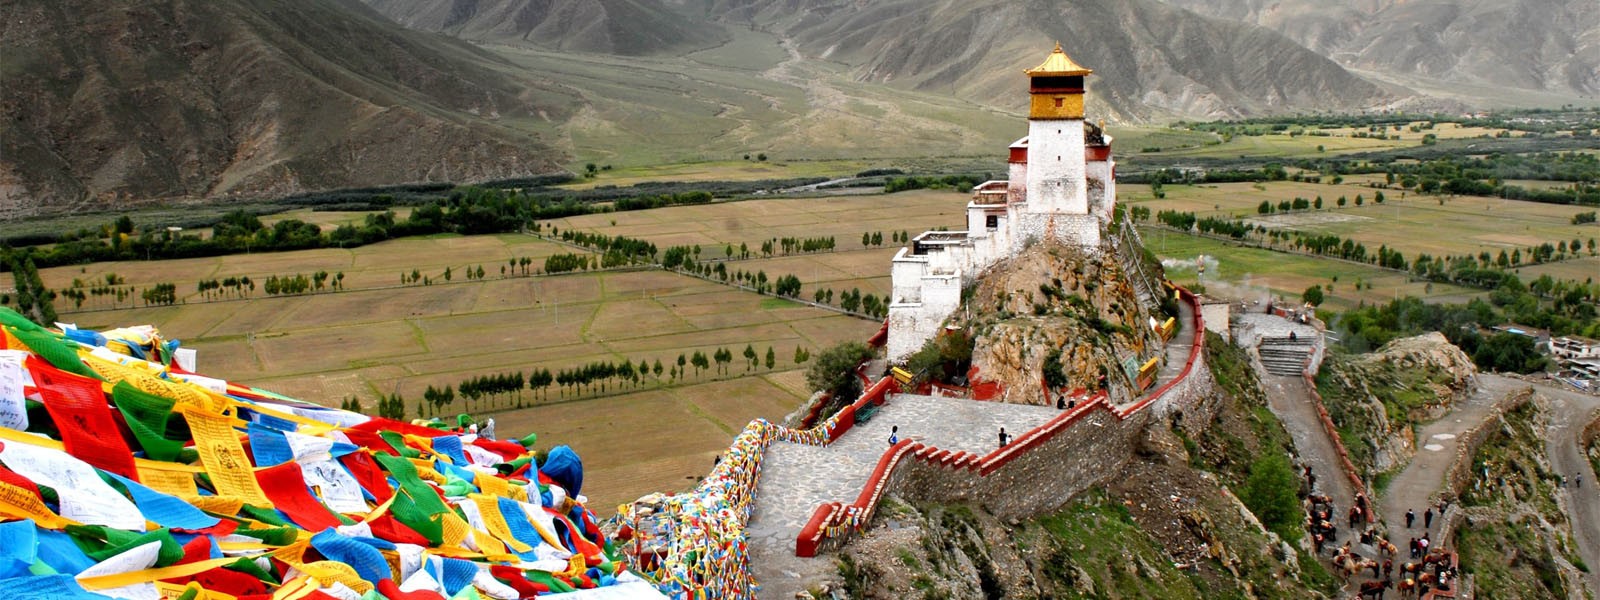 Lhasa City Tours - 9 Days